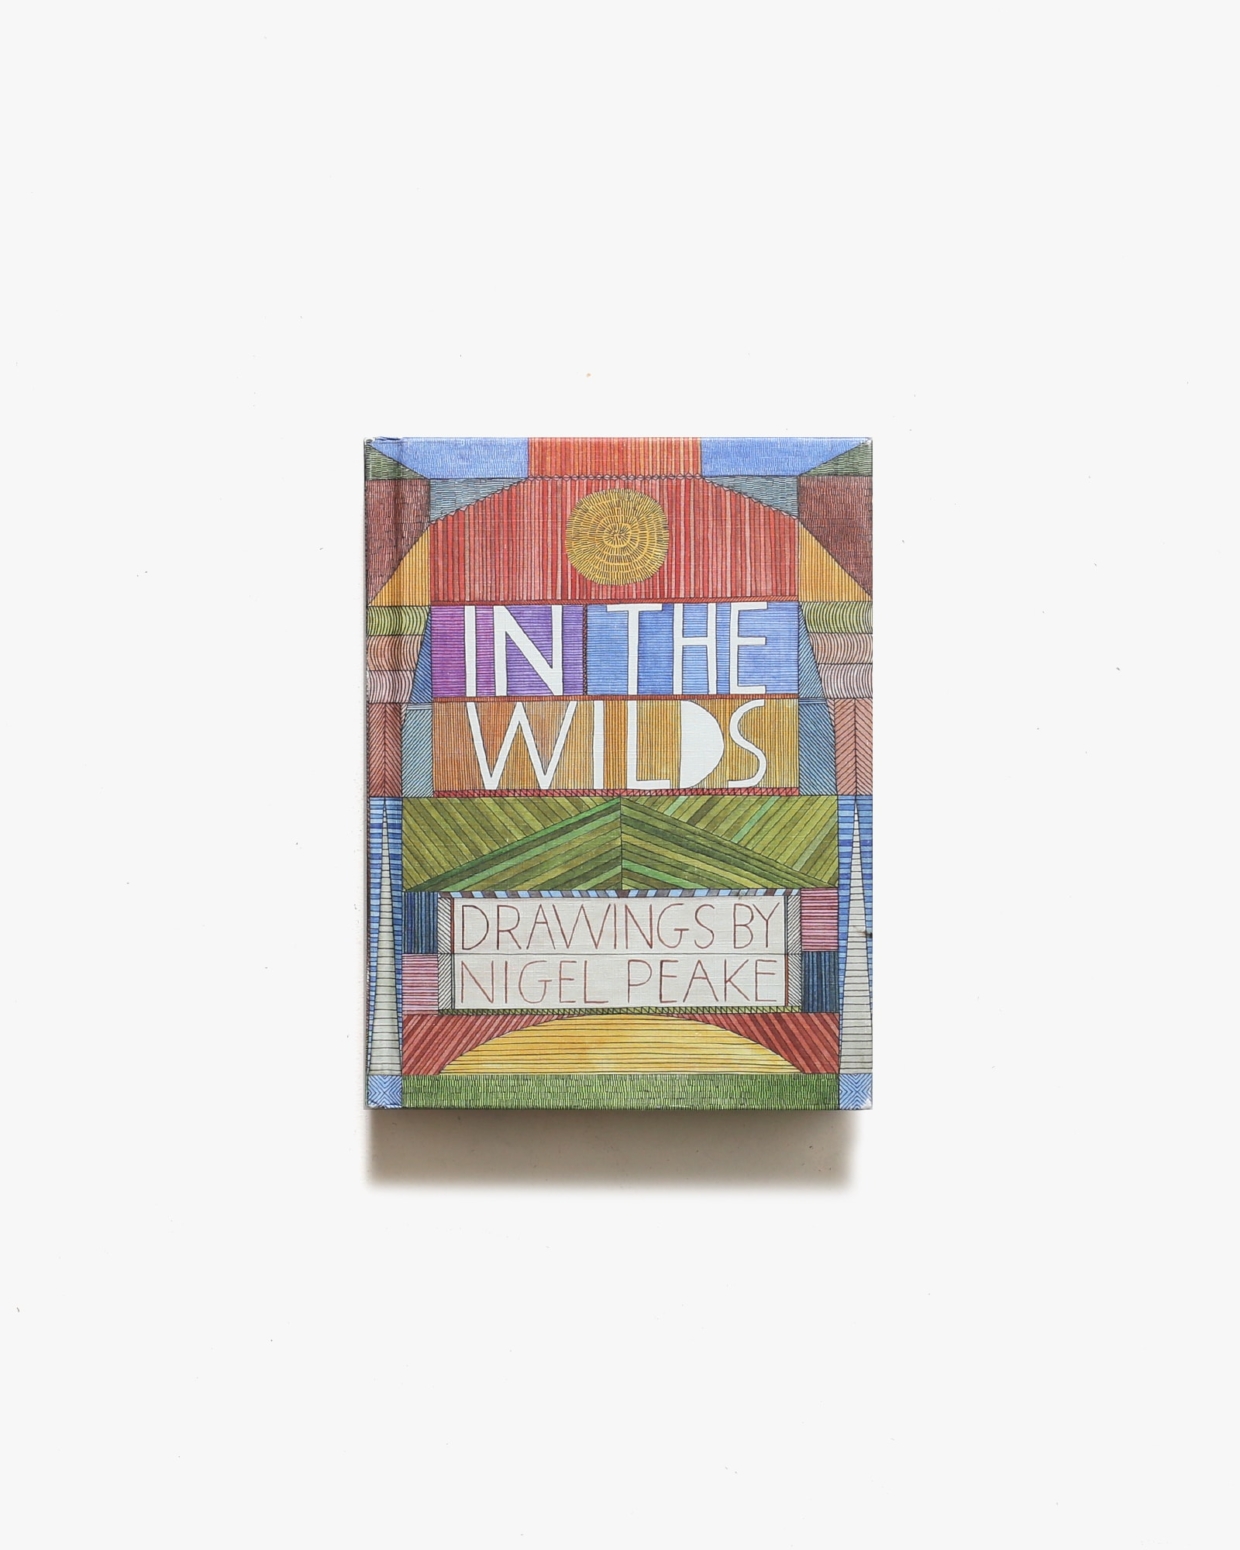 In The Wilds Drawings | Nigel Peake ナイジェル・ピーク